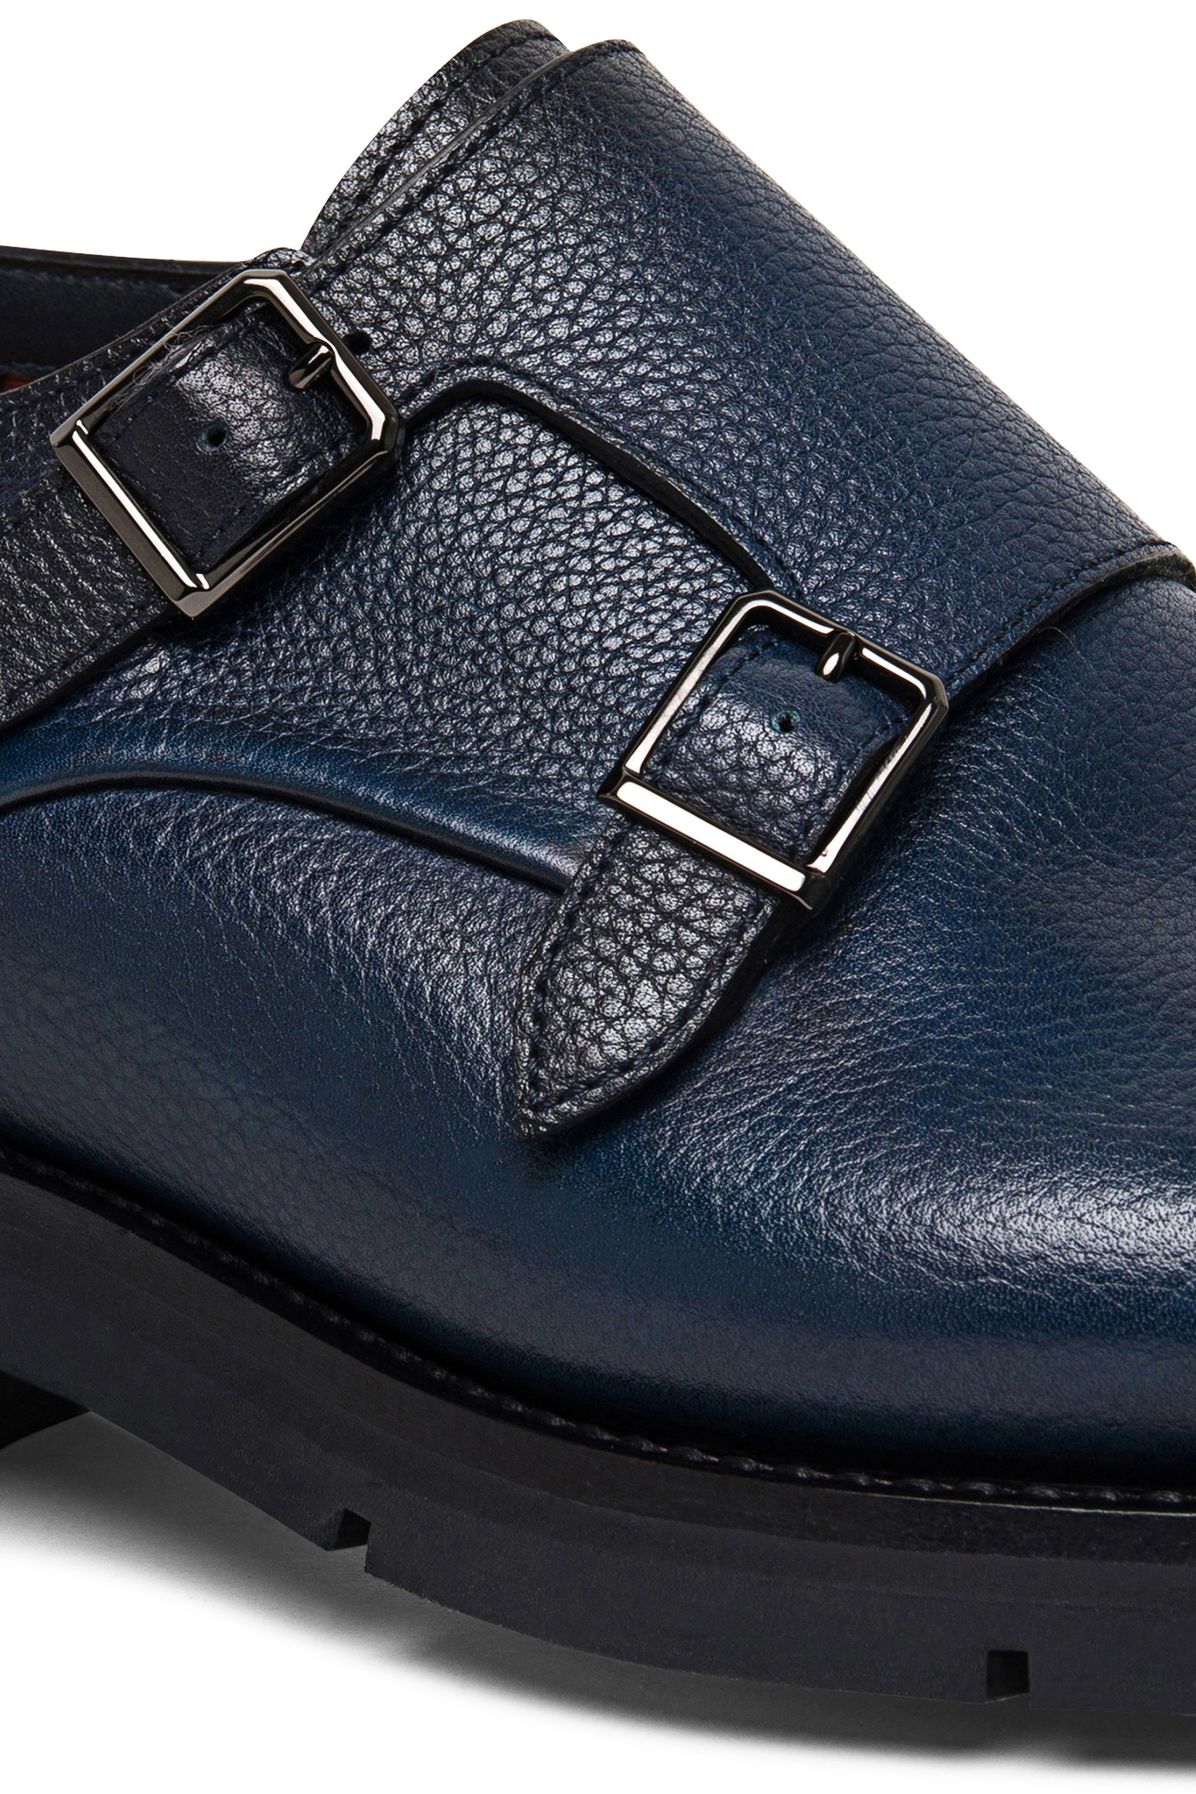 Santoni Leather shoe with double buckle